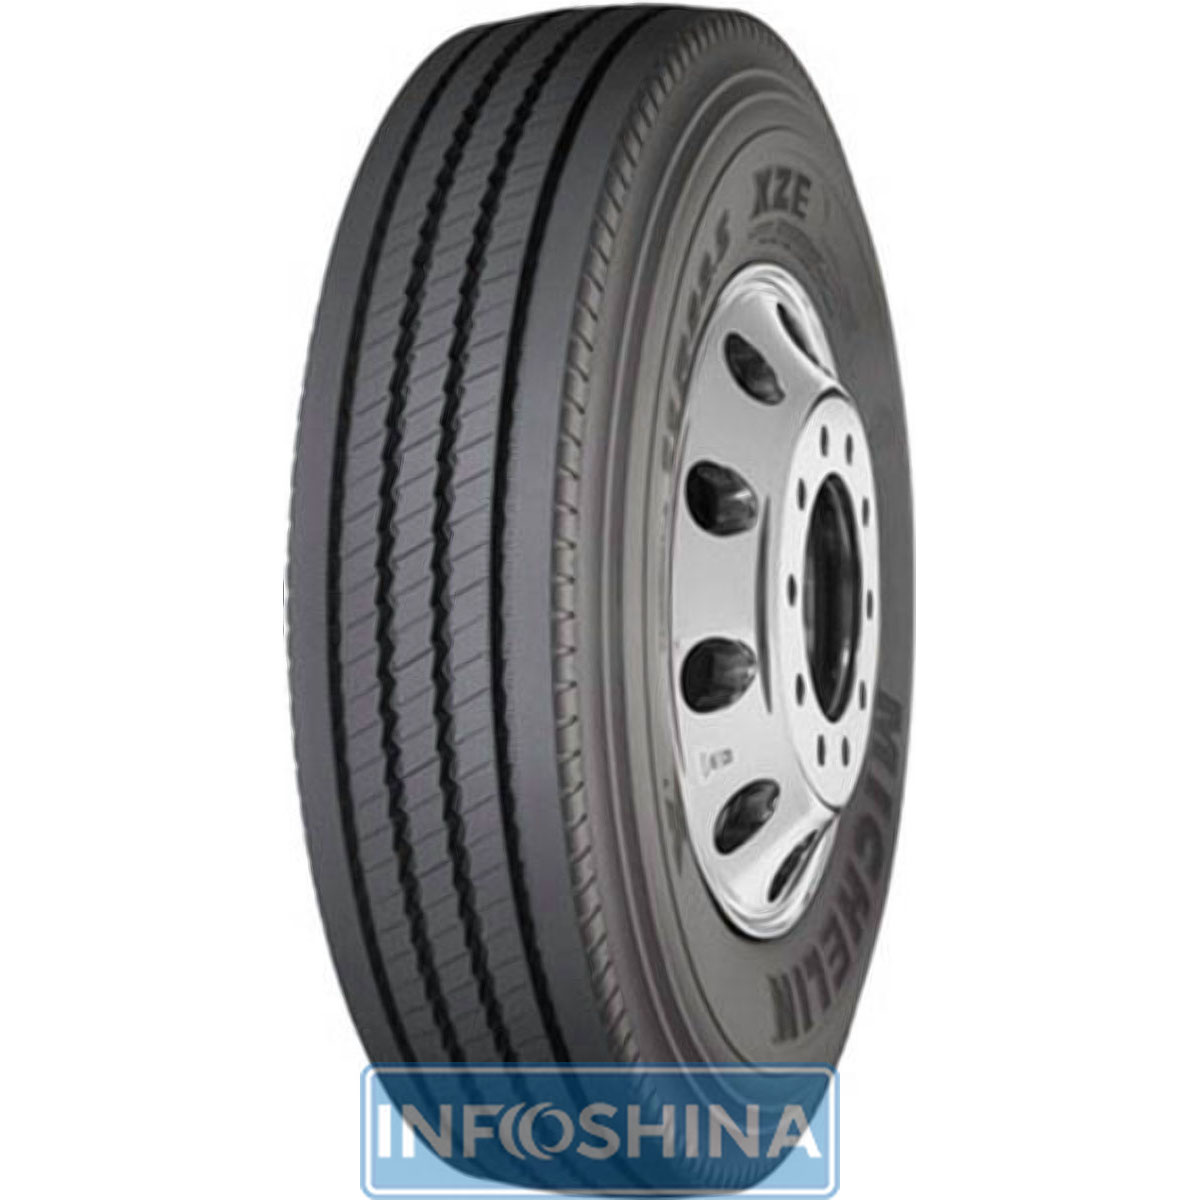 Купить шины Michelin XZE (универсальная) 12.00 R24 156/153K